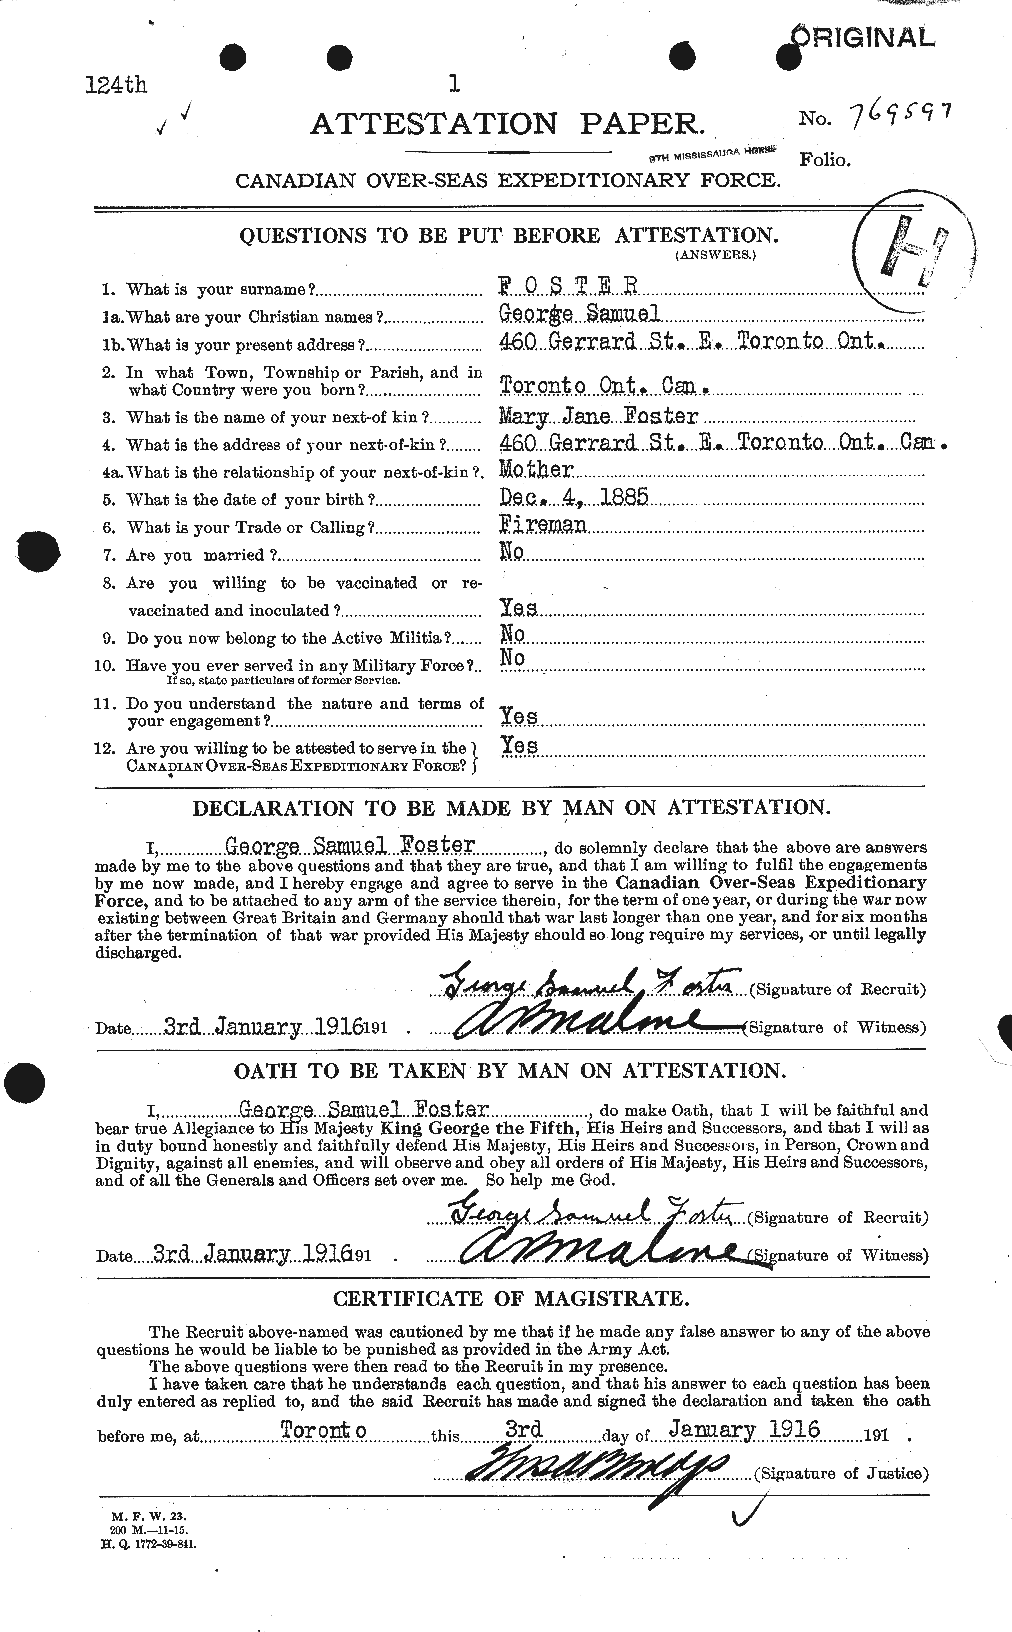 Dossiers du Personnel de la Première Guerre mondiale - CEC 330699a